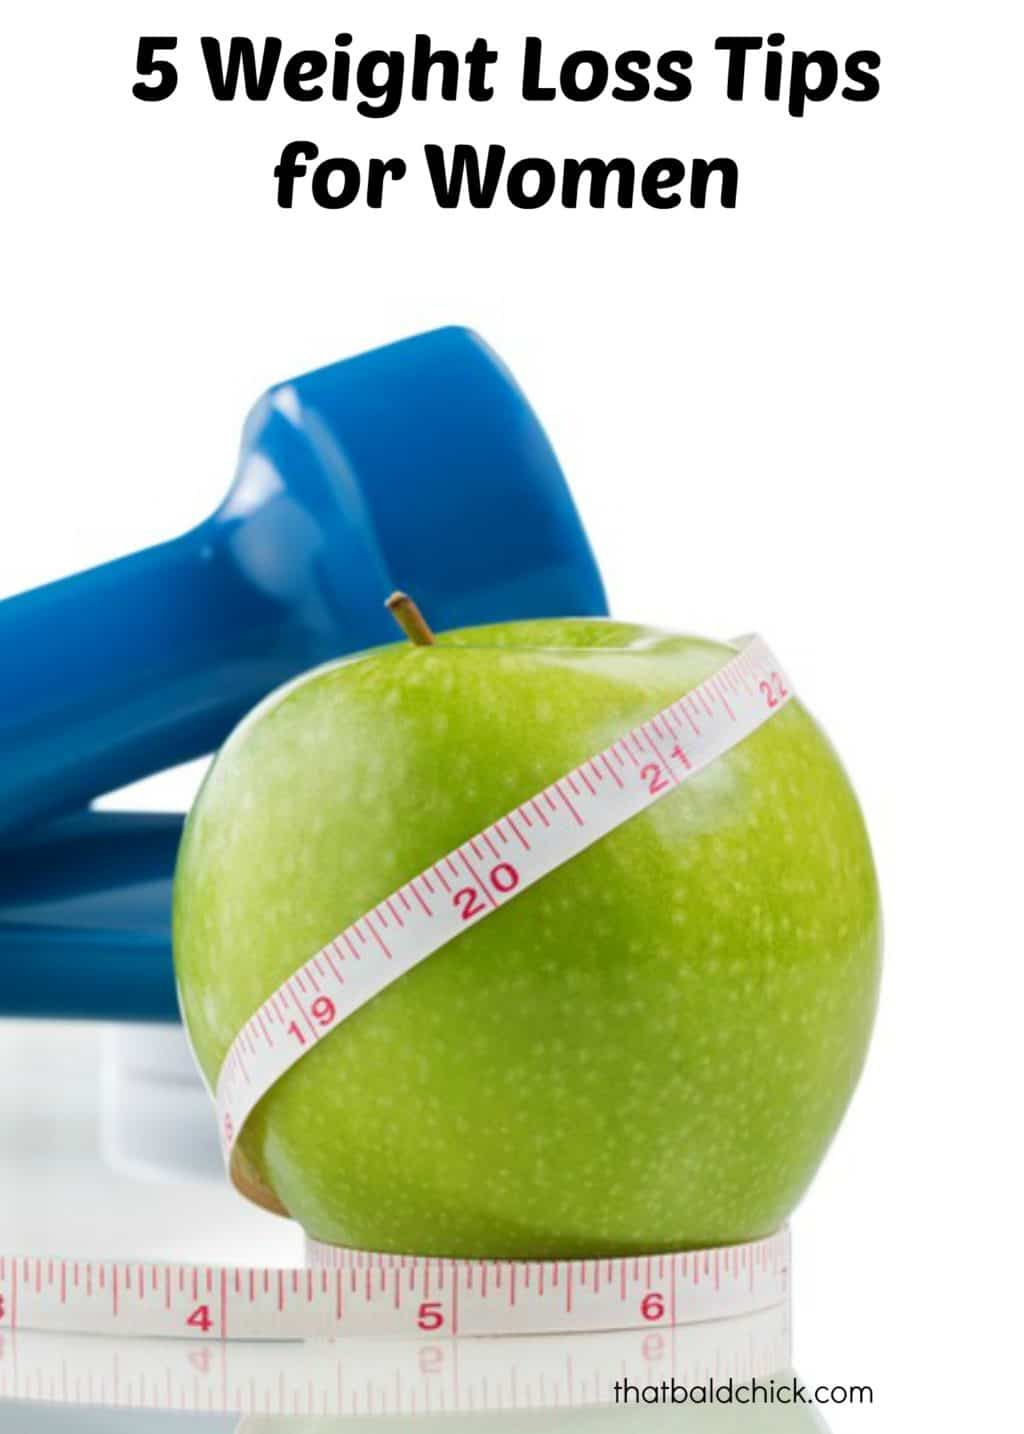 5 Weight Loss Tips for Women @thatbaldchick